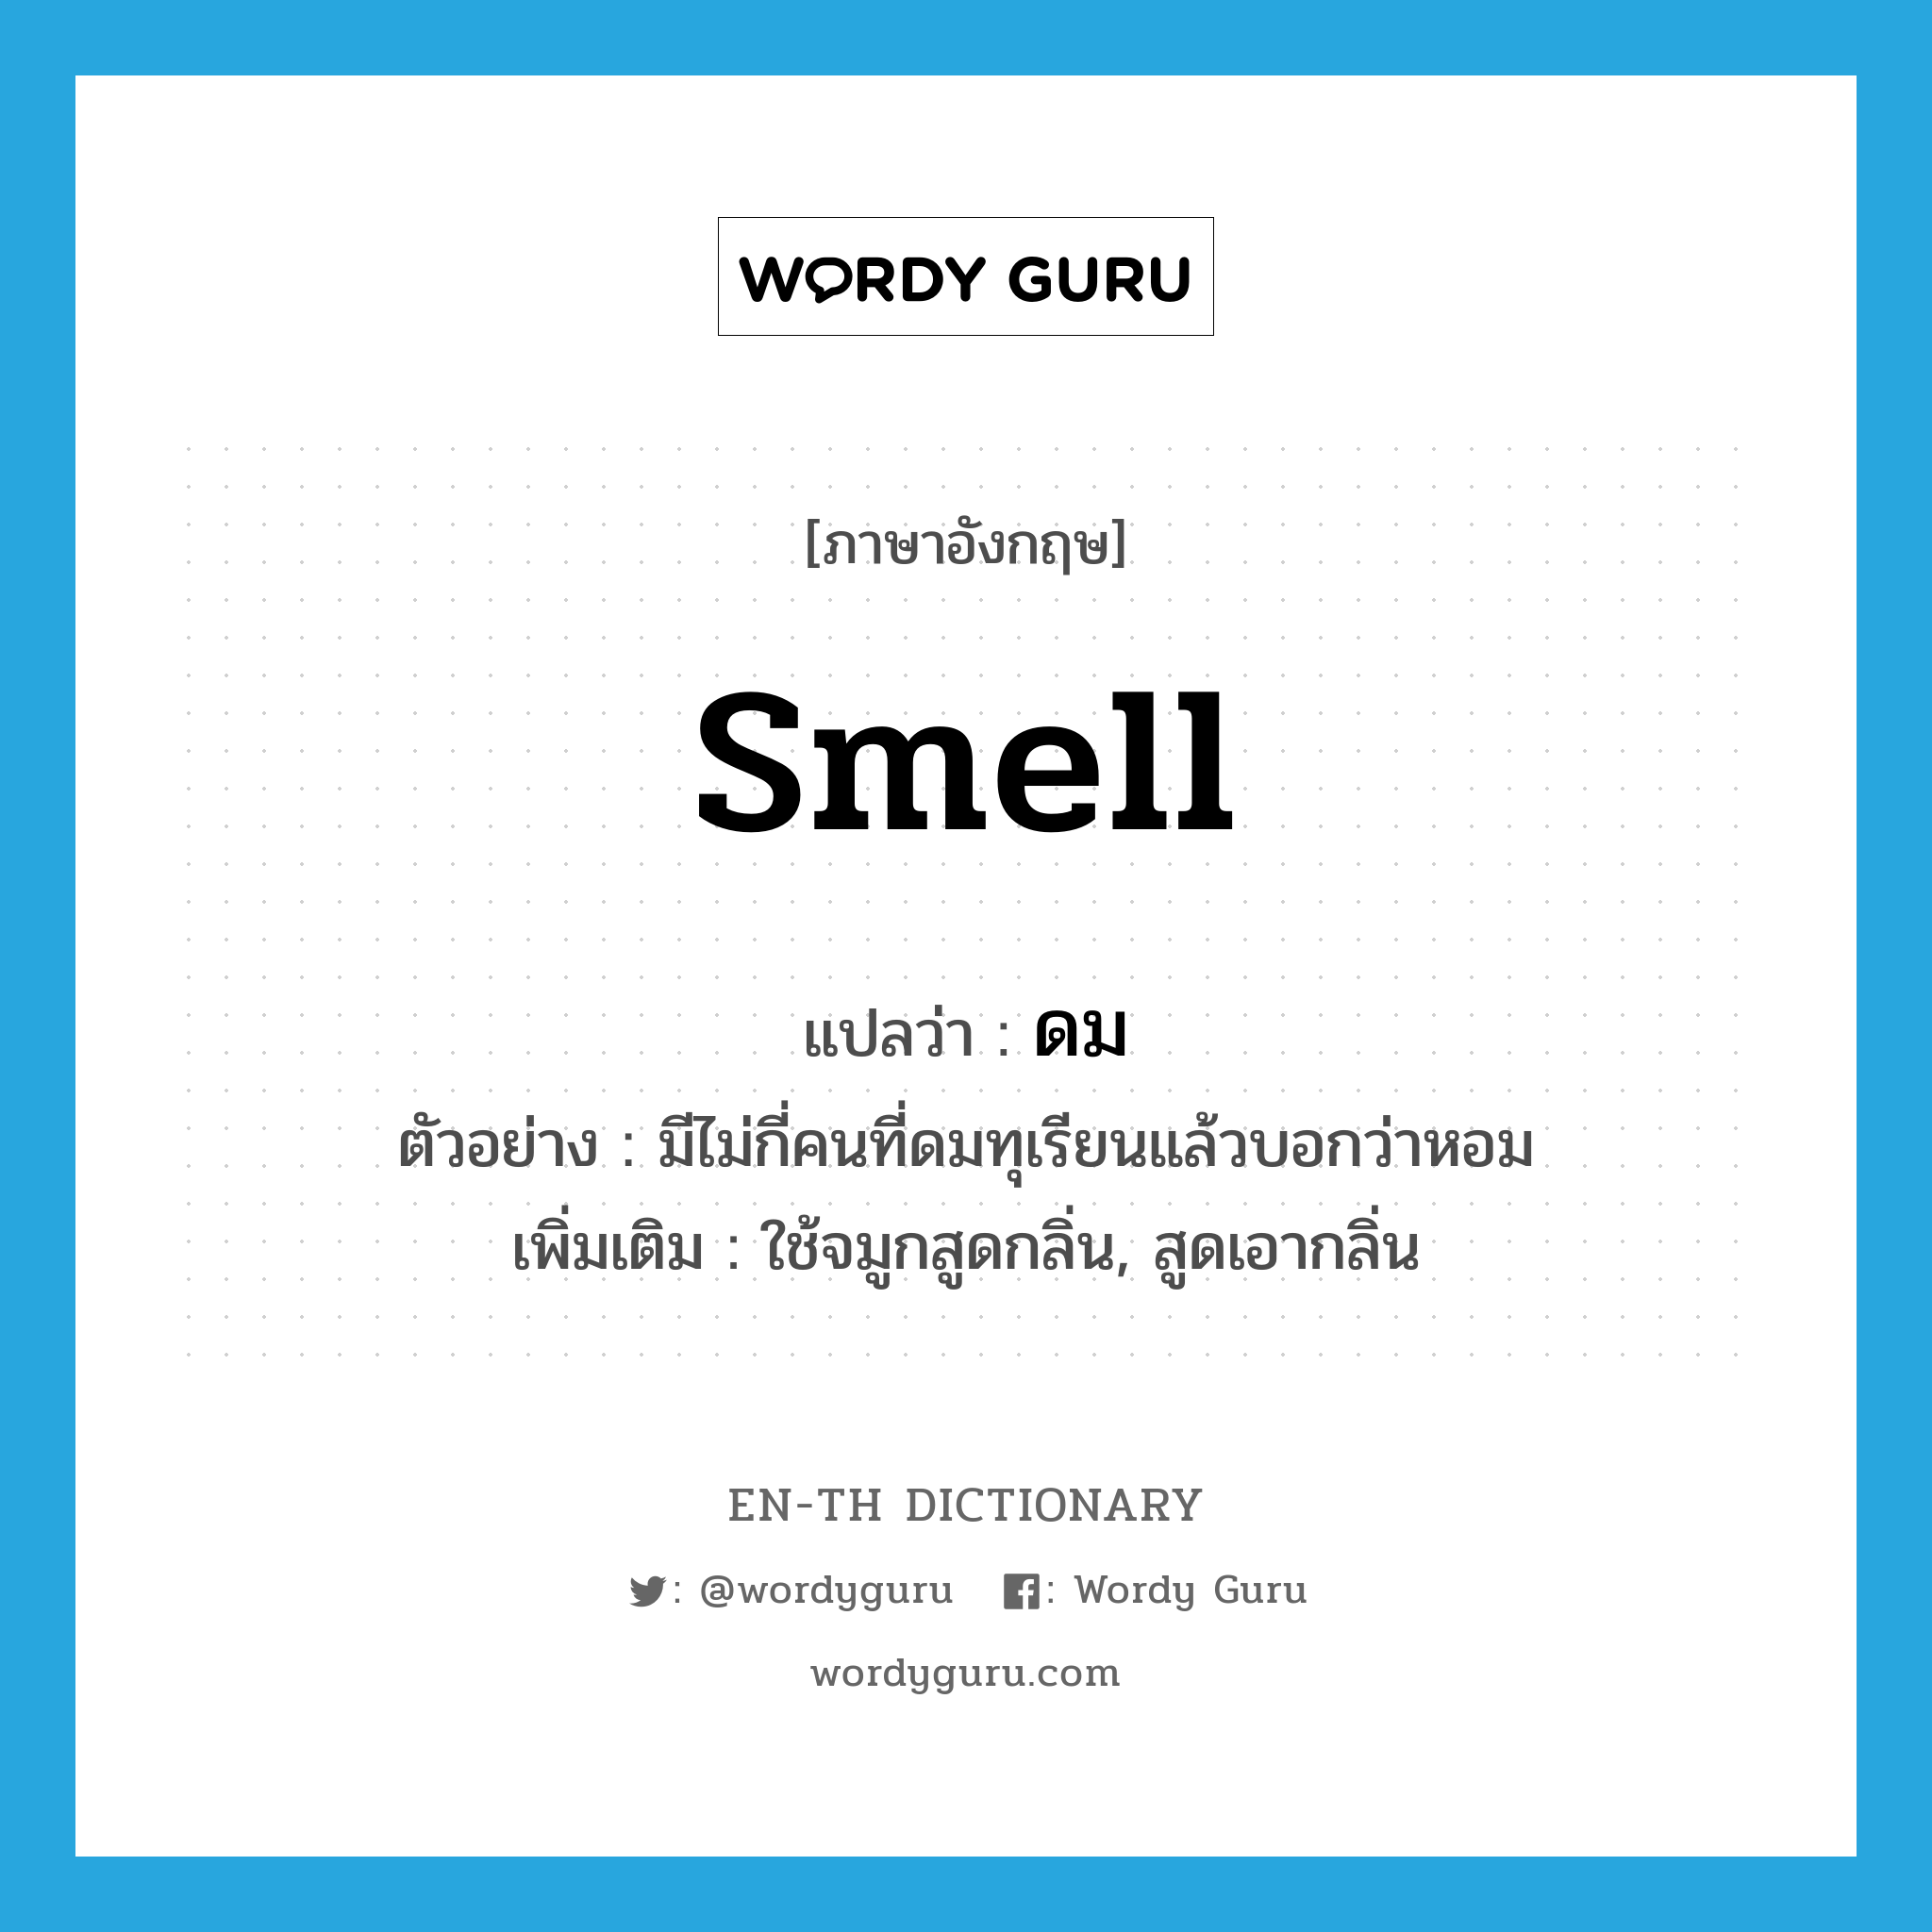 ดม ภาษาอังกฤษ?, คำศัพท์ภาษาอังกฤษ ดม แปลว่า smell ประเภท V ตัวอย่าง มีไม่กี่คนที่ดมทุเรียนแล้วบอกว่าหอม เพิ่มเติม ใช้จมูกสูดกลิ่น, สูดเอากลิ่น หมวด V